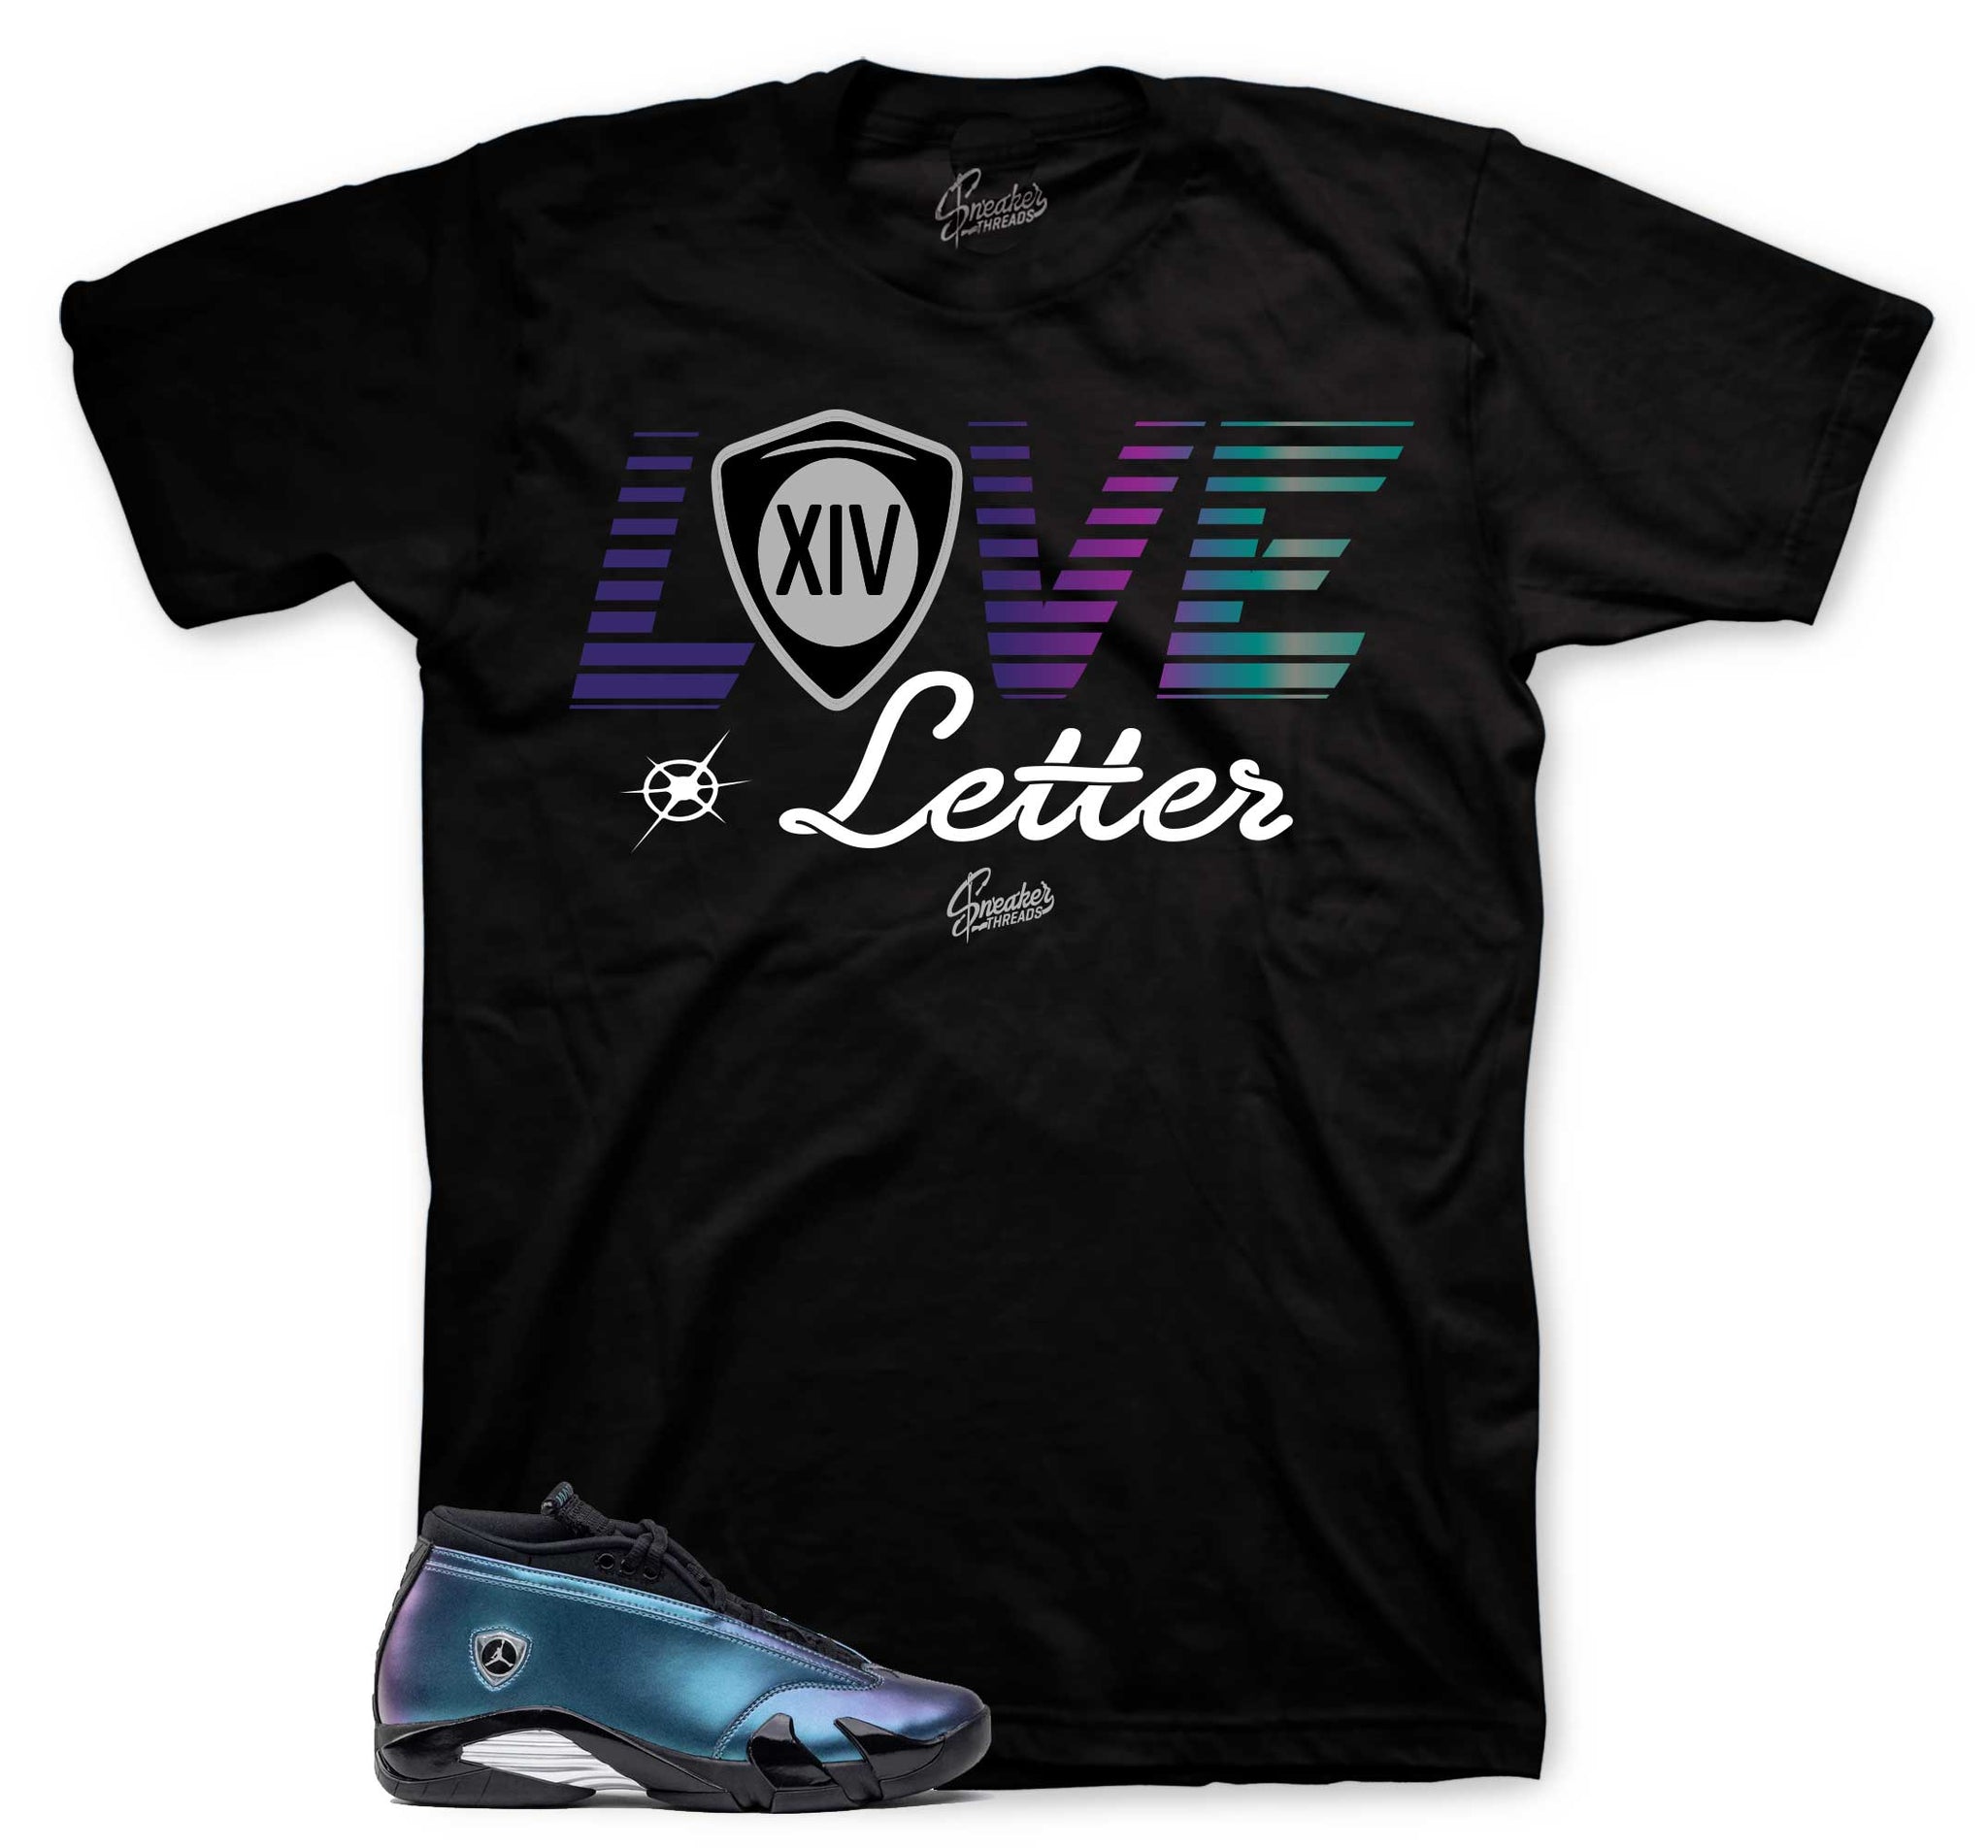 Retro 14 Love Letter Shirt - Letter - Black